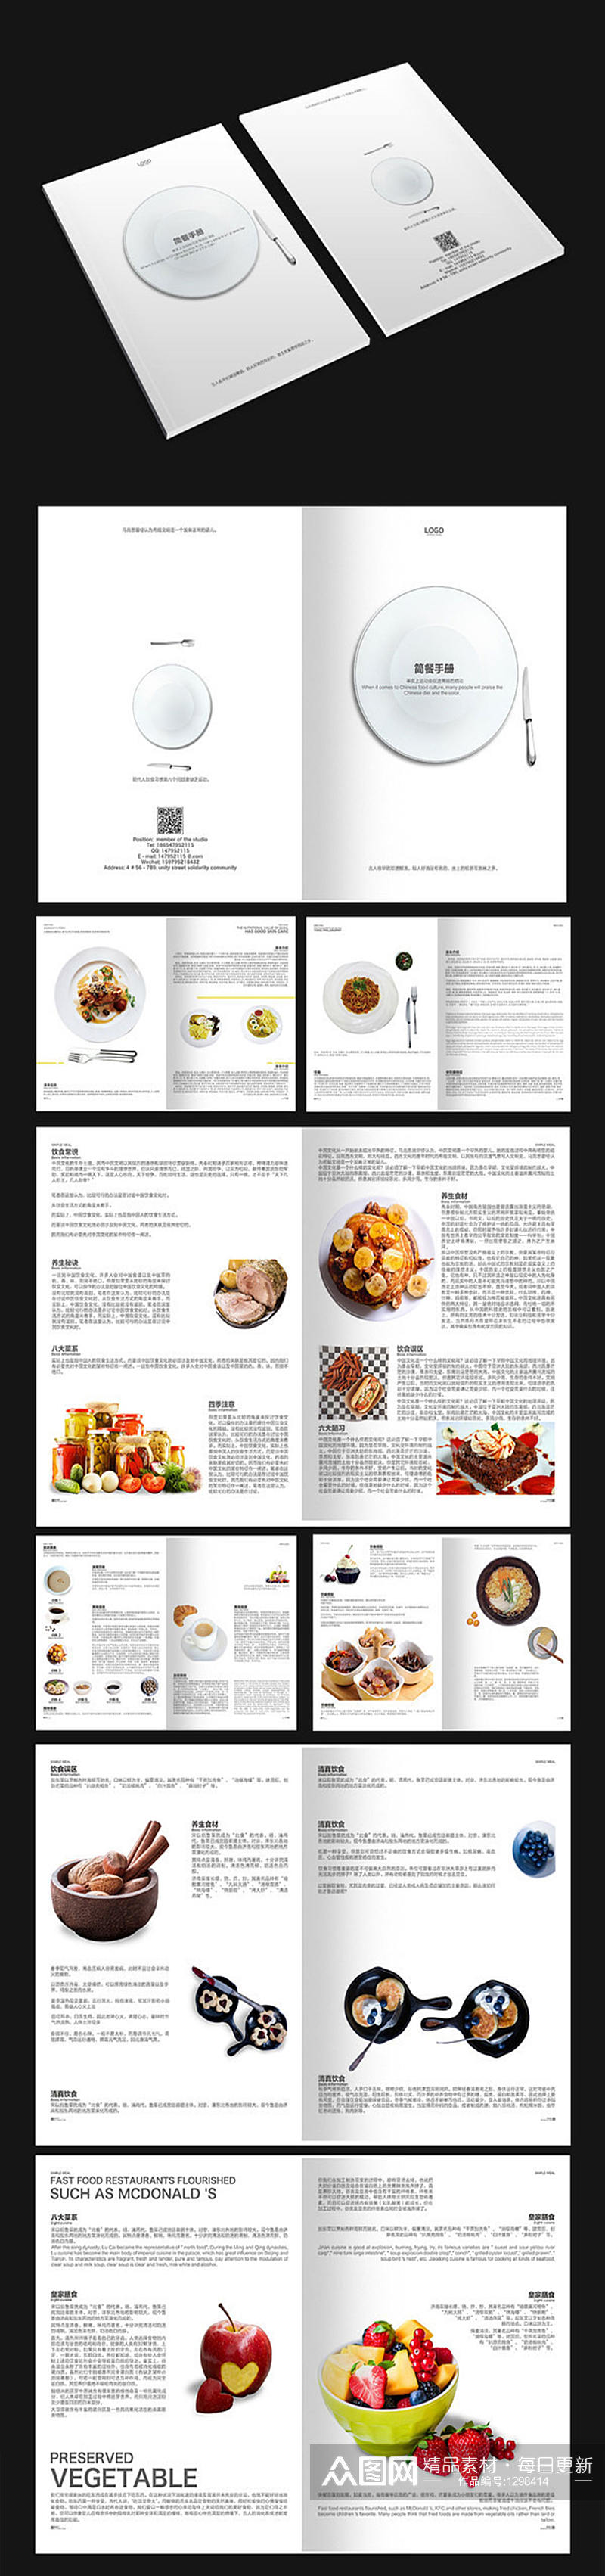 简约食品画册设计素材